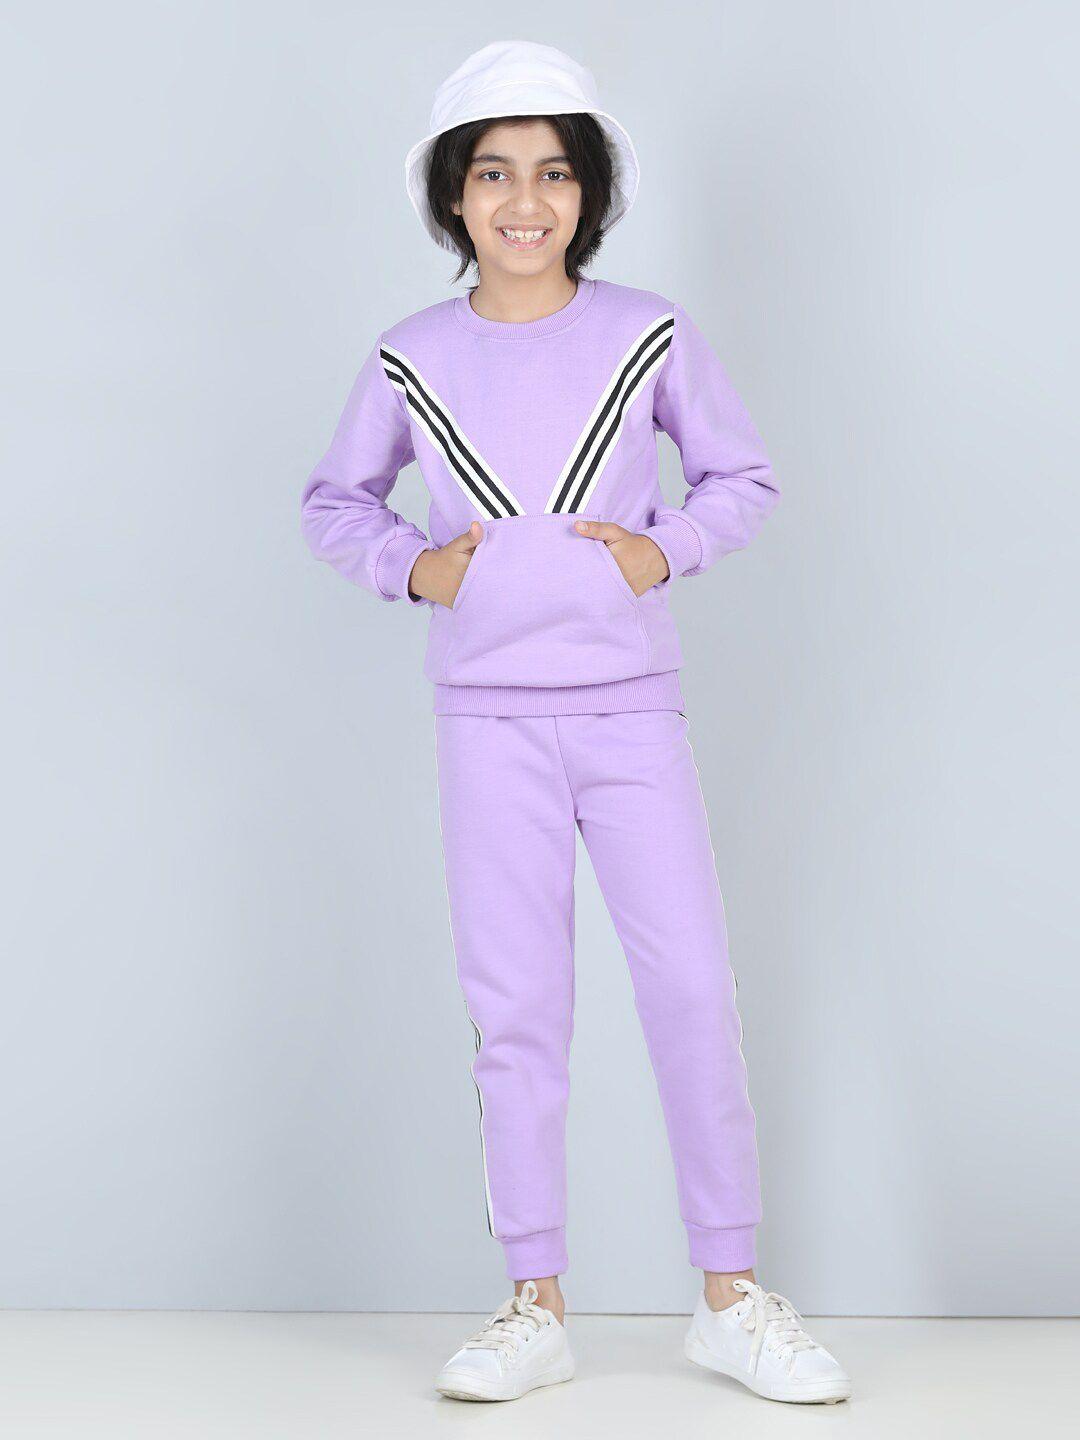 cutiekins boys purple & black printed shirt with pyjamas